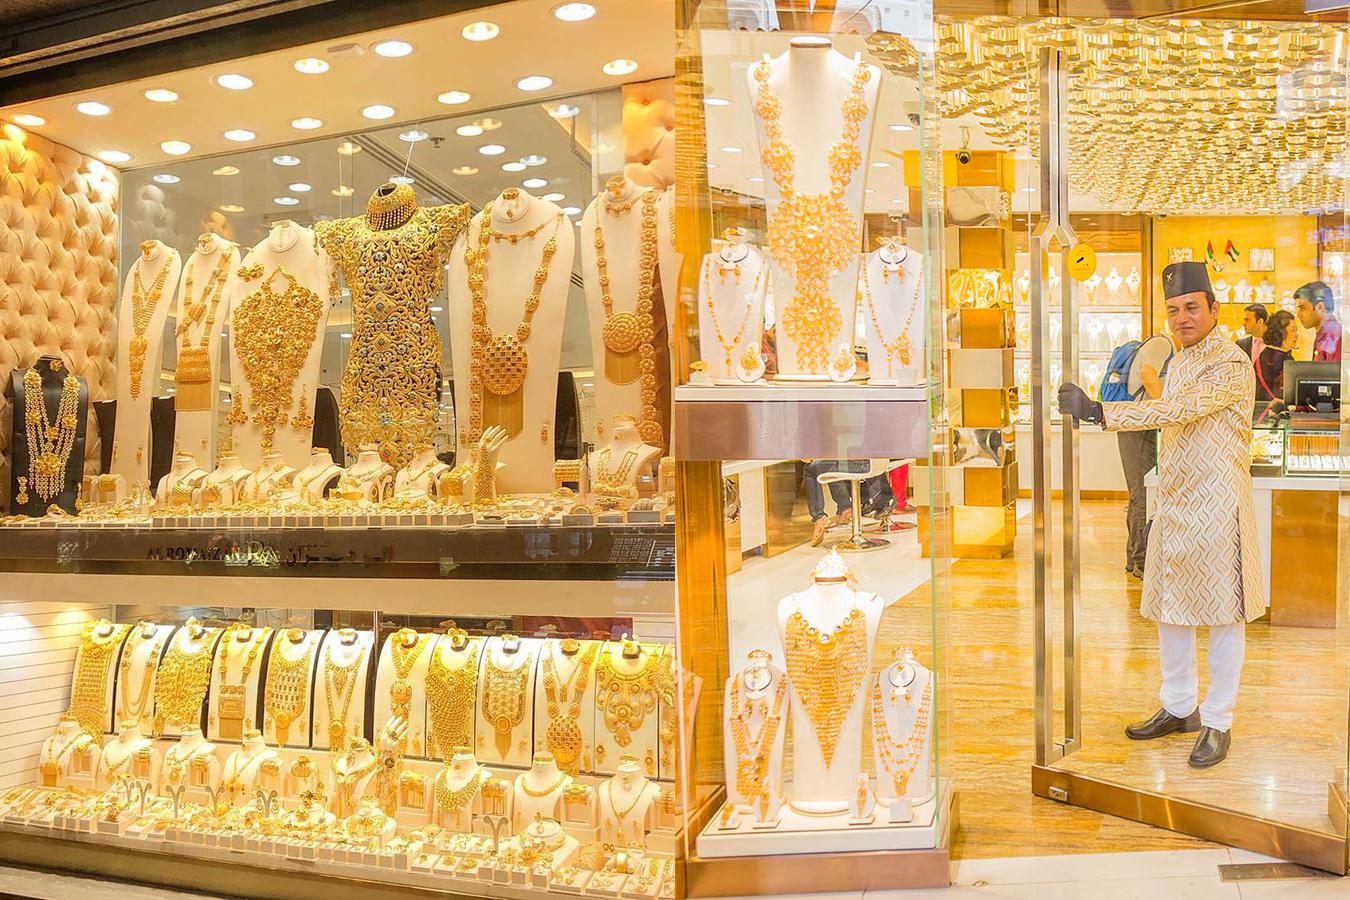 Lóa mắt trước khu chợ toàn bằng vàng ở UAE - Ảnh 1.